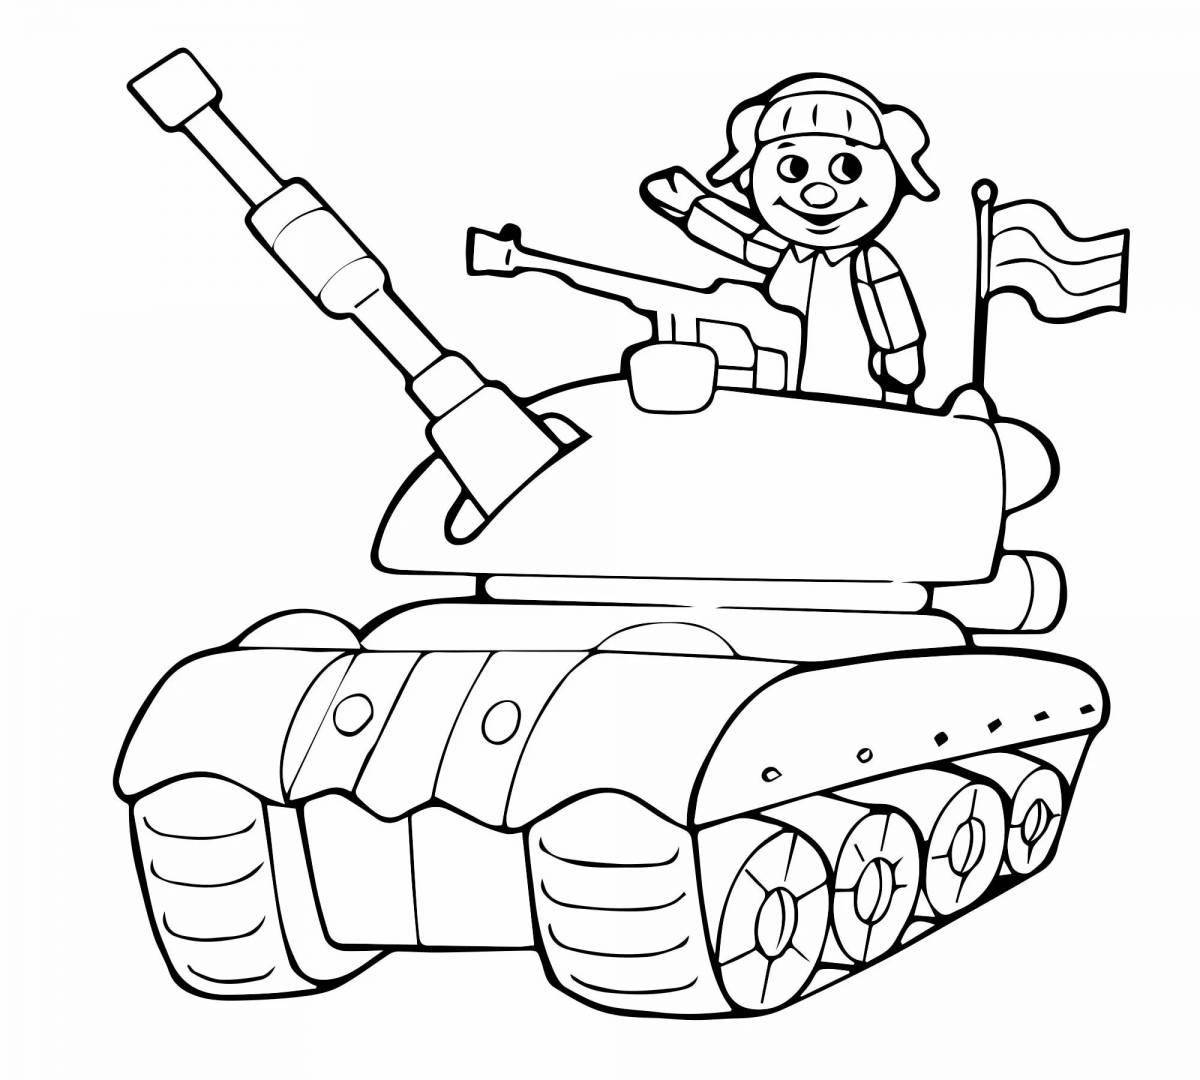 Праздничная военная раскраска для детей 4-5 лет